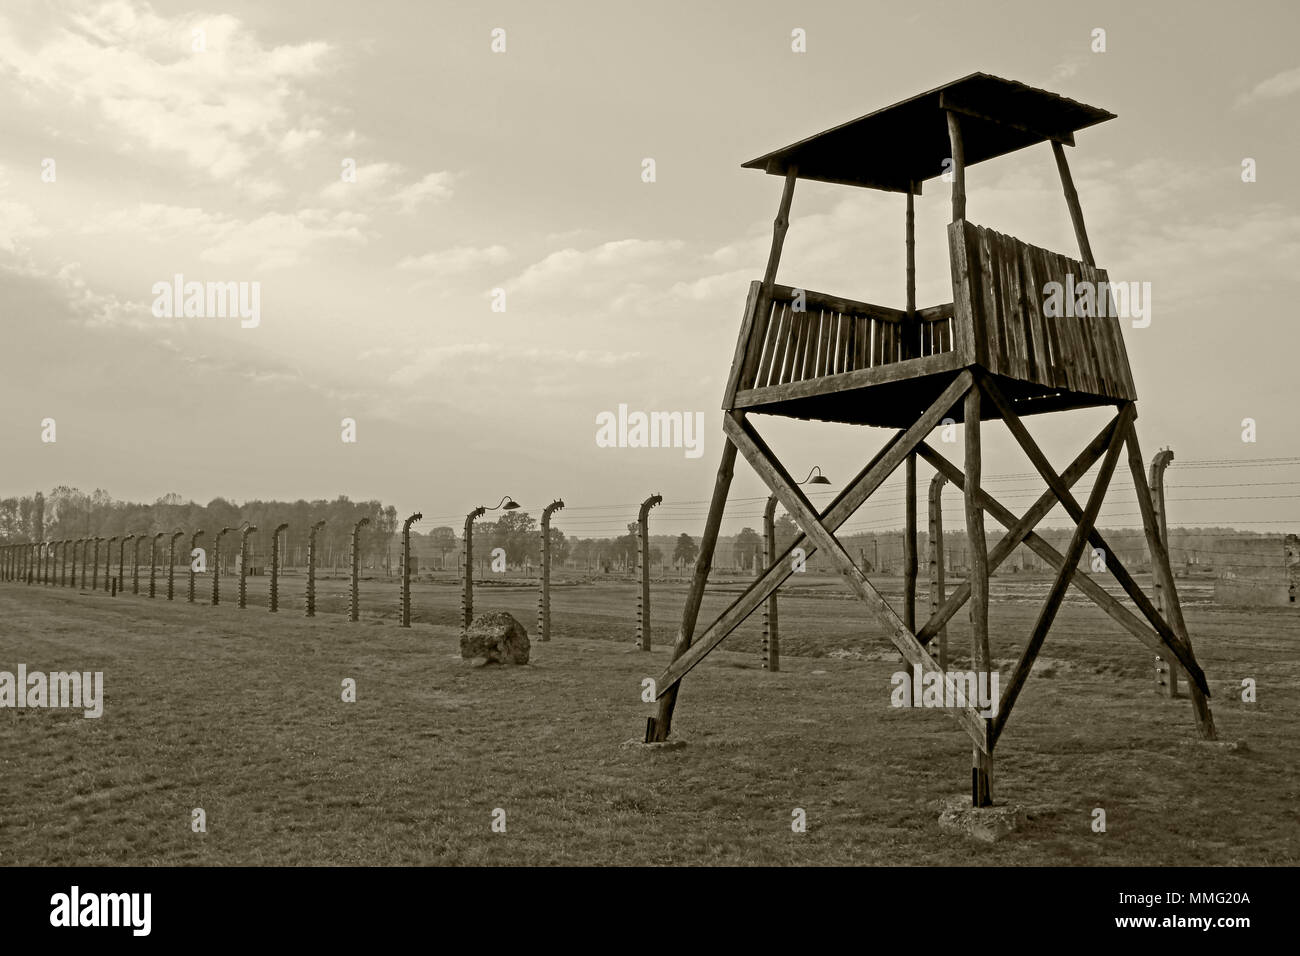 AUSCHWITZ, Polen, 12. Oktober 2013: Wachtturm und Zaun im Konzentrationslager Auschwitz Birkenau KZ, Schwarz, Weiß und Beige duplex Verarbeitung Fotografie, Polen Stockfoto